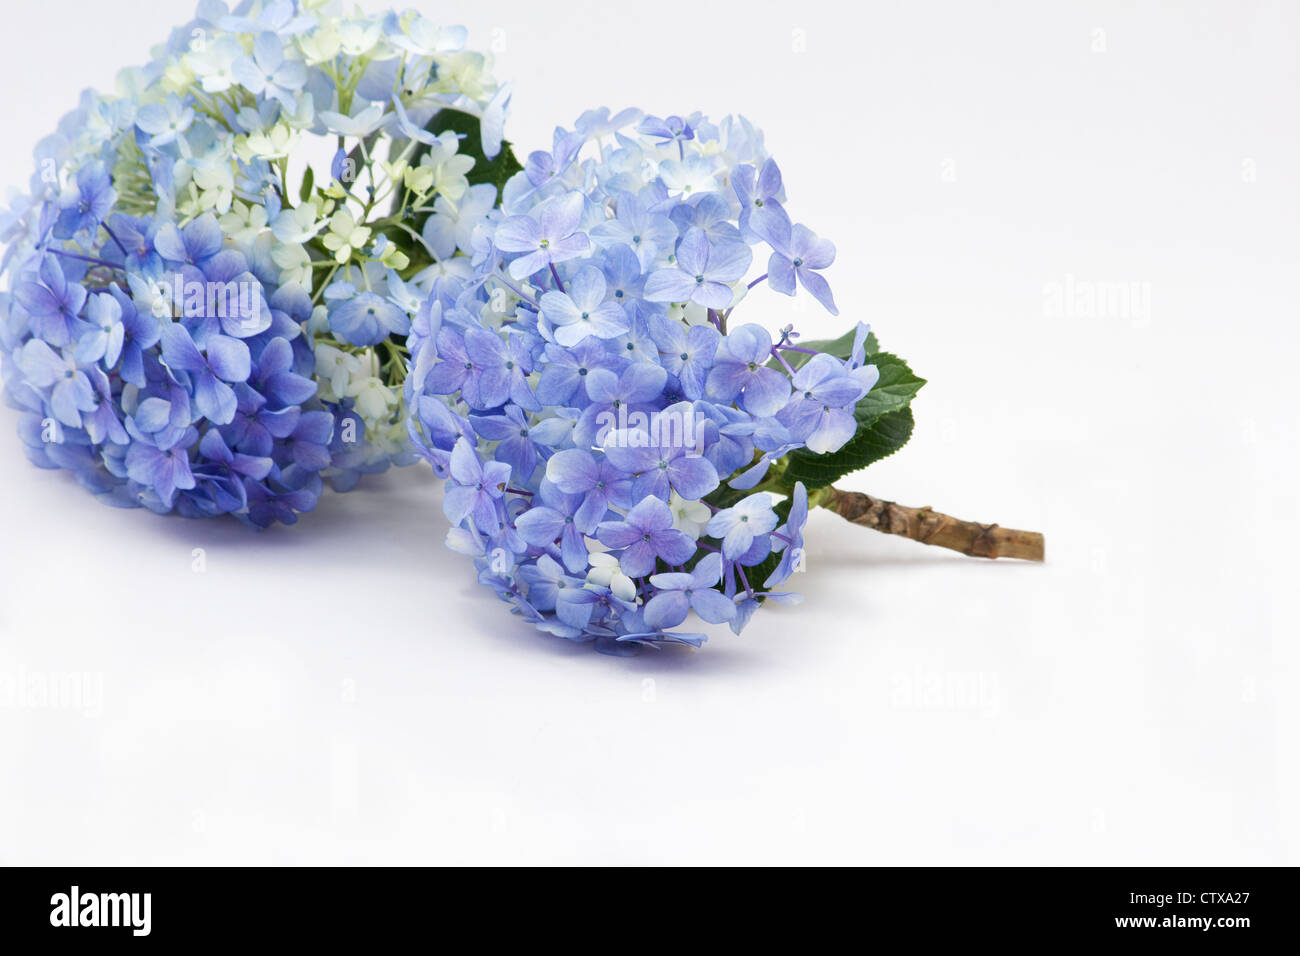 Hortensias bleus sur fond blanc Banque D'Images